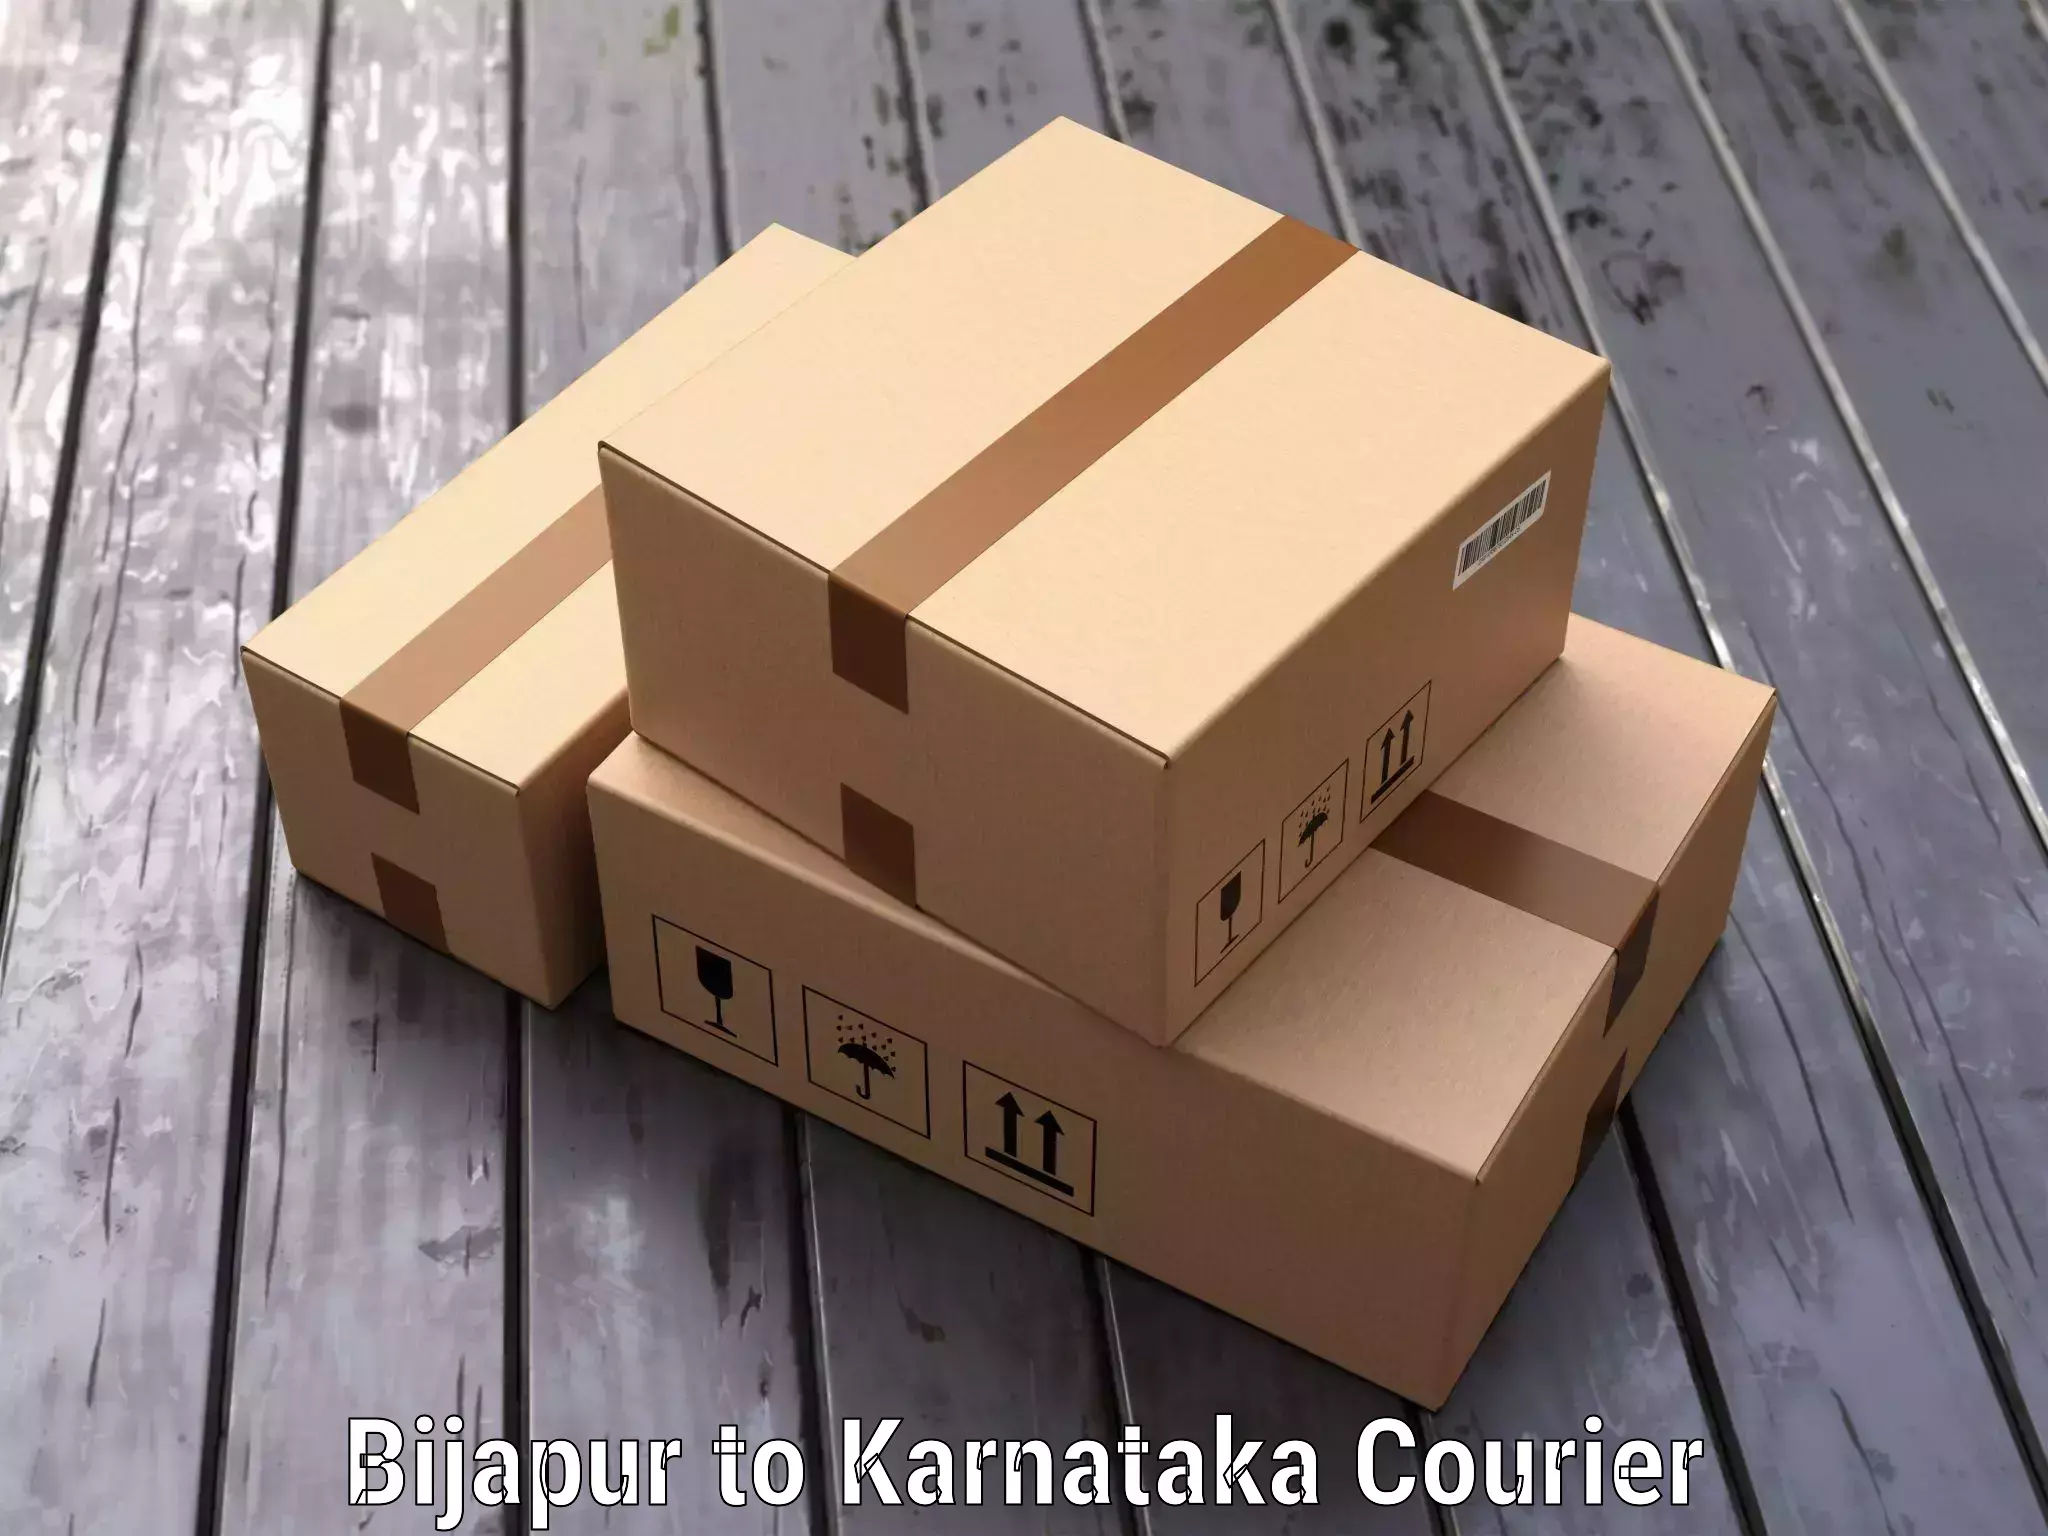 Luggage shipping specialists Bijapur to Karnataka